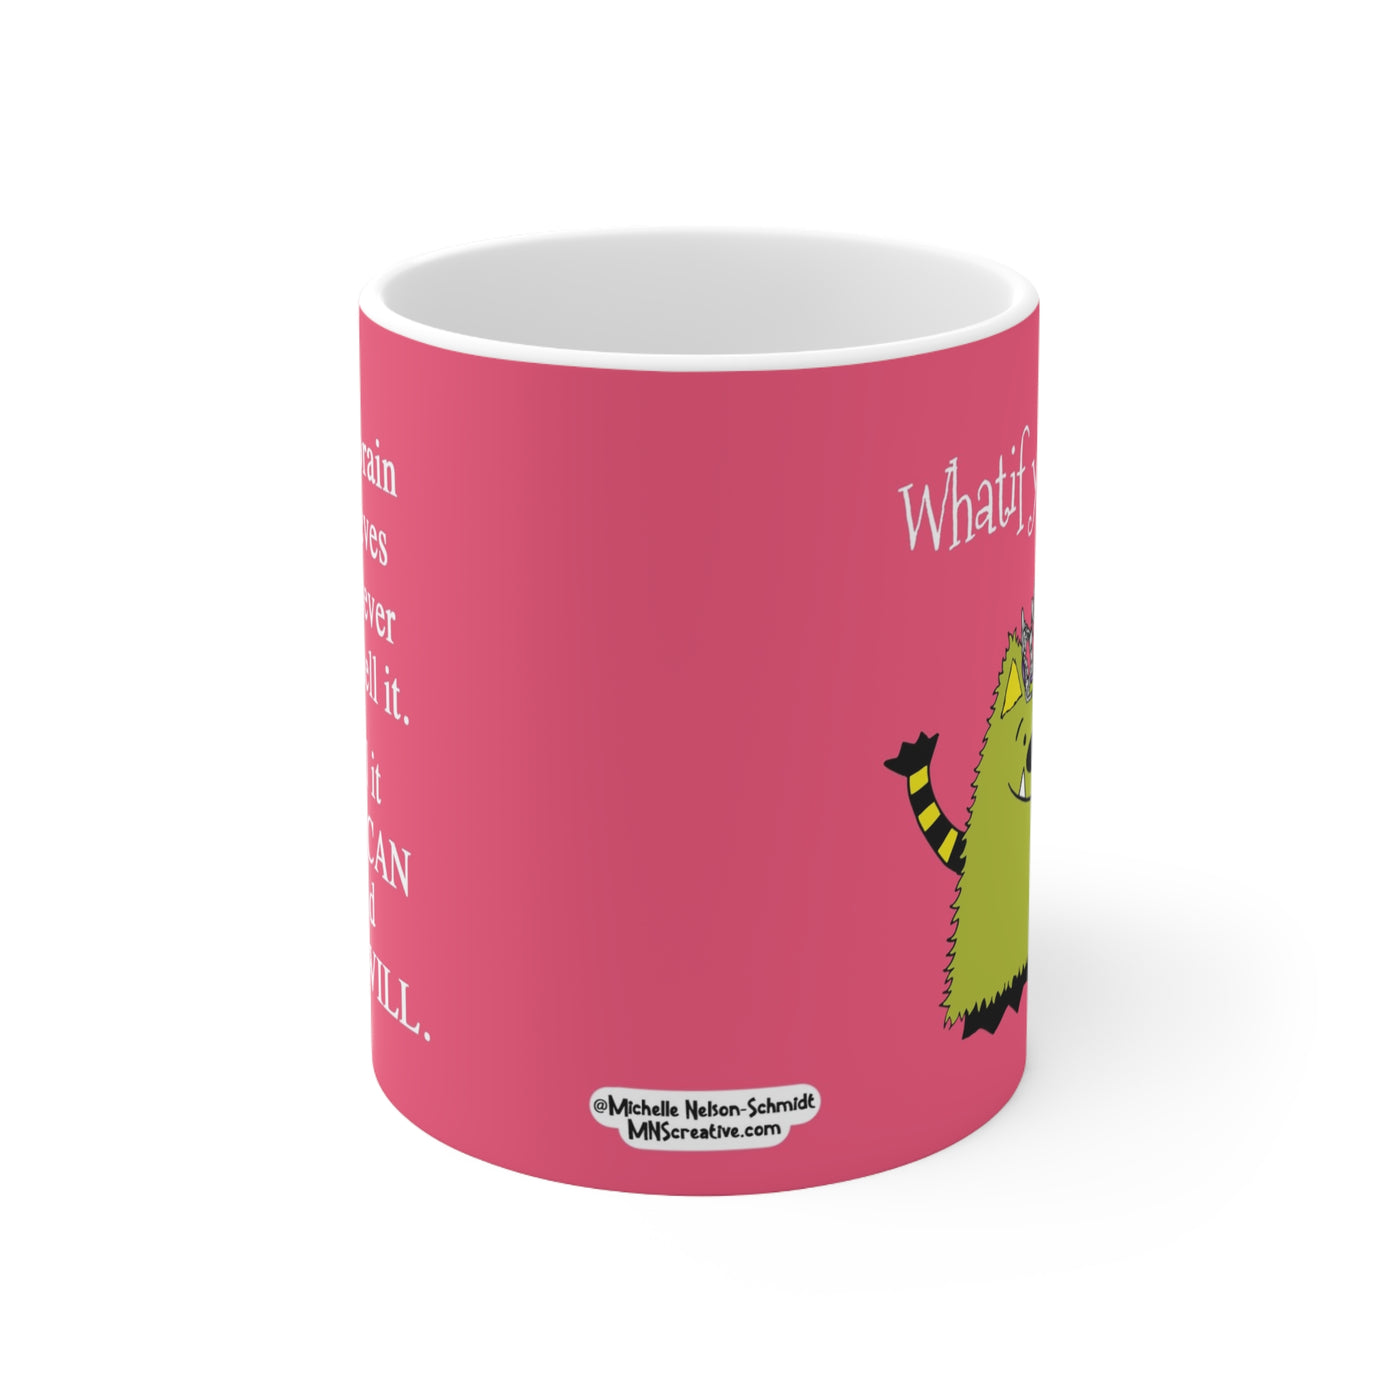 Whatif You Can Special Edition Tiara 11 oz Ceramic Mug